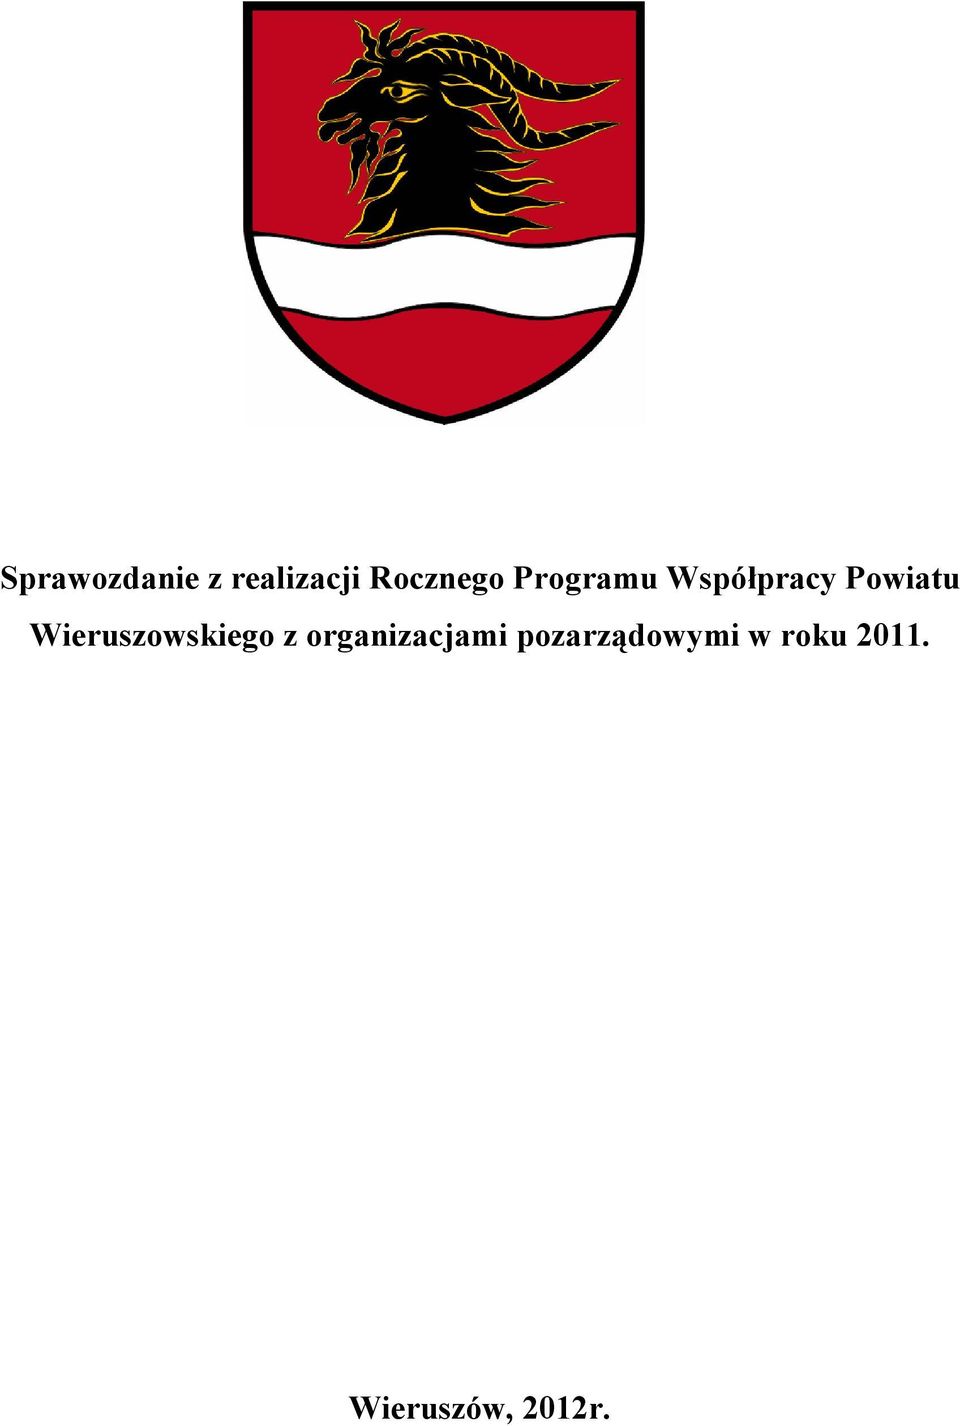 Wieruszowskiego z organizacjami